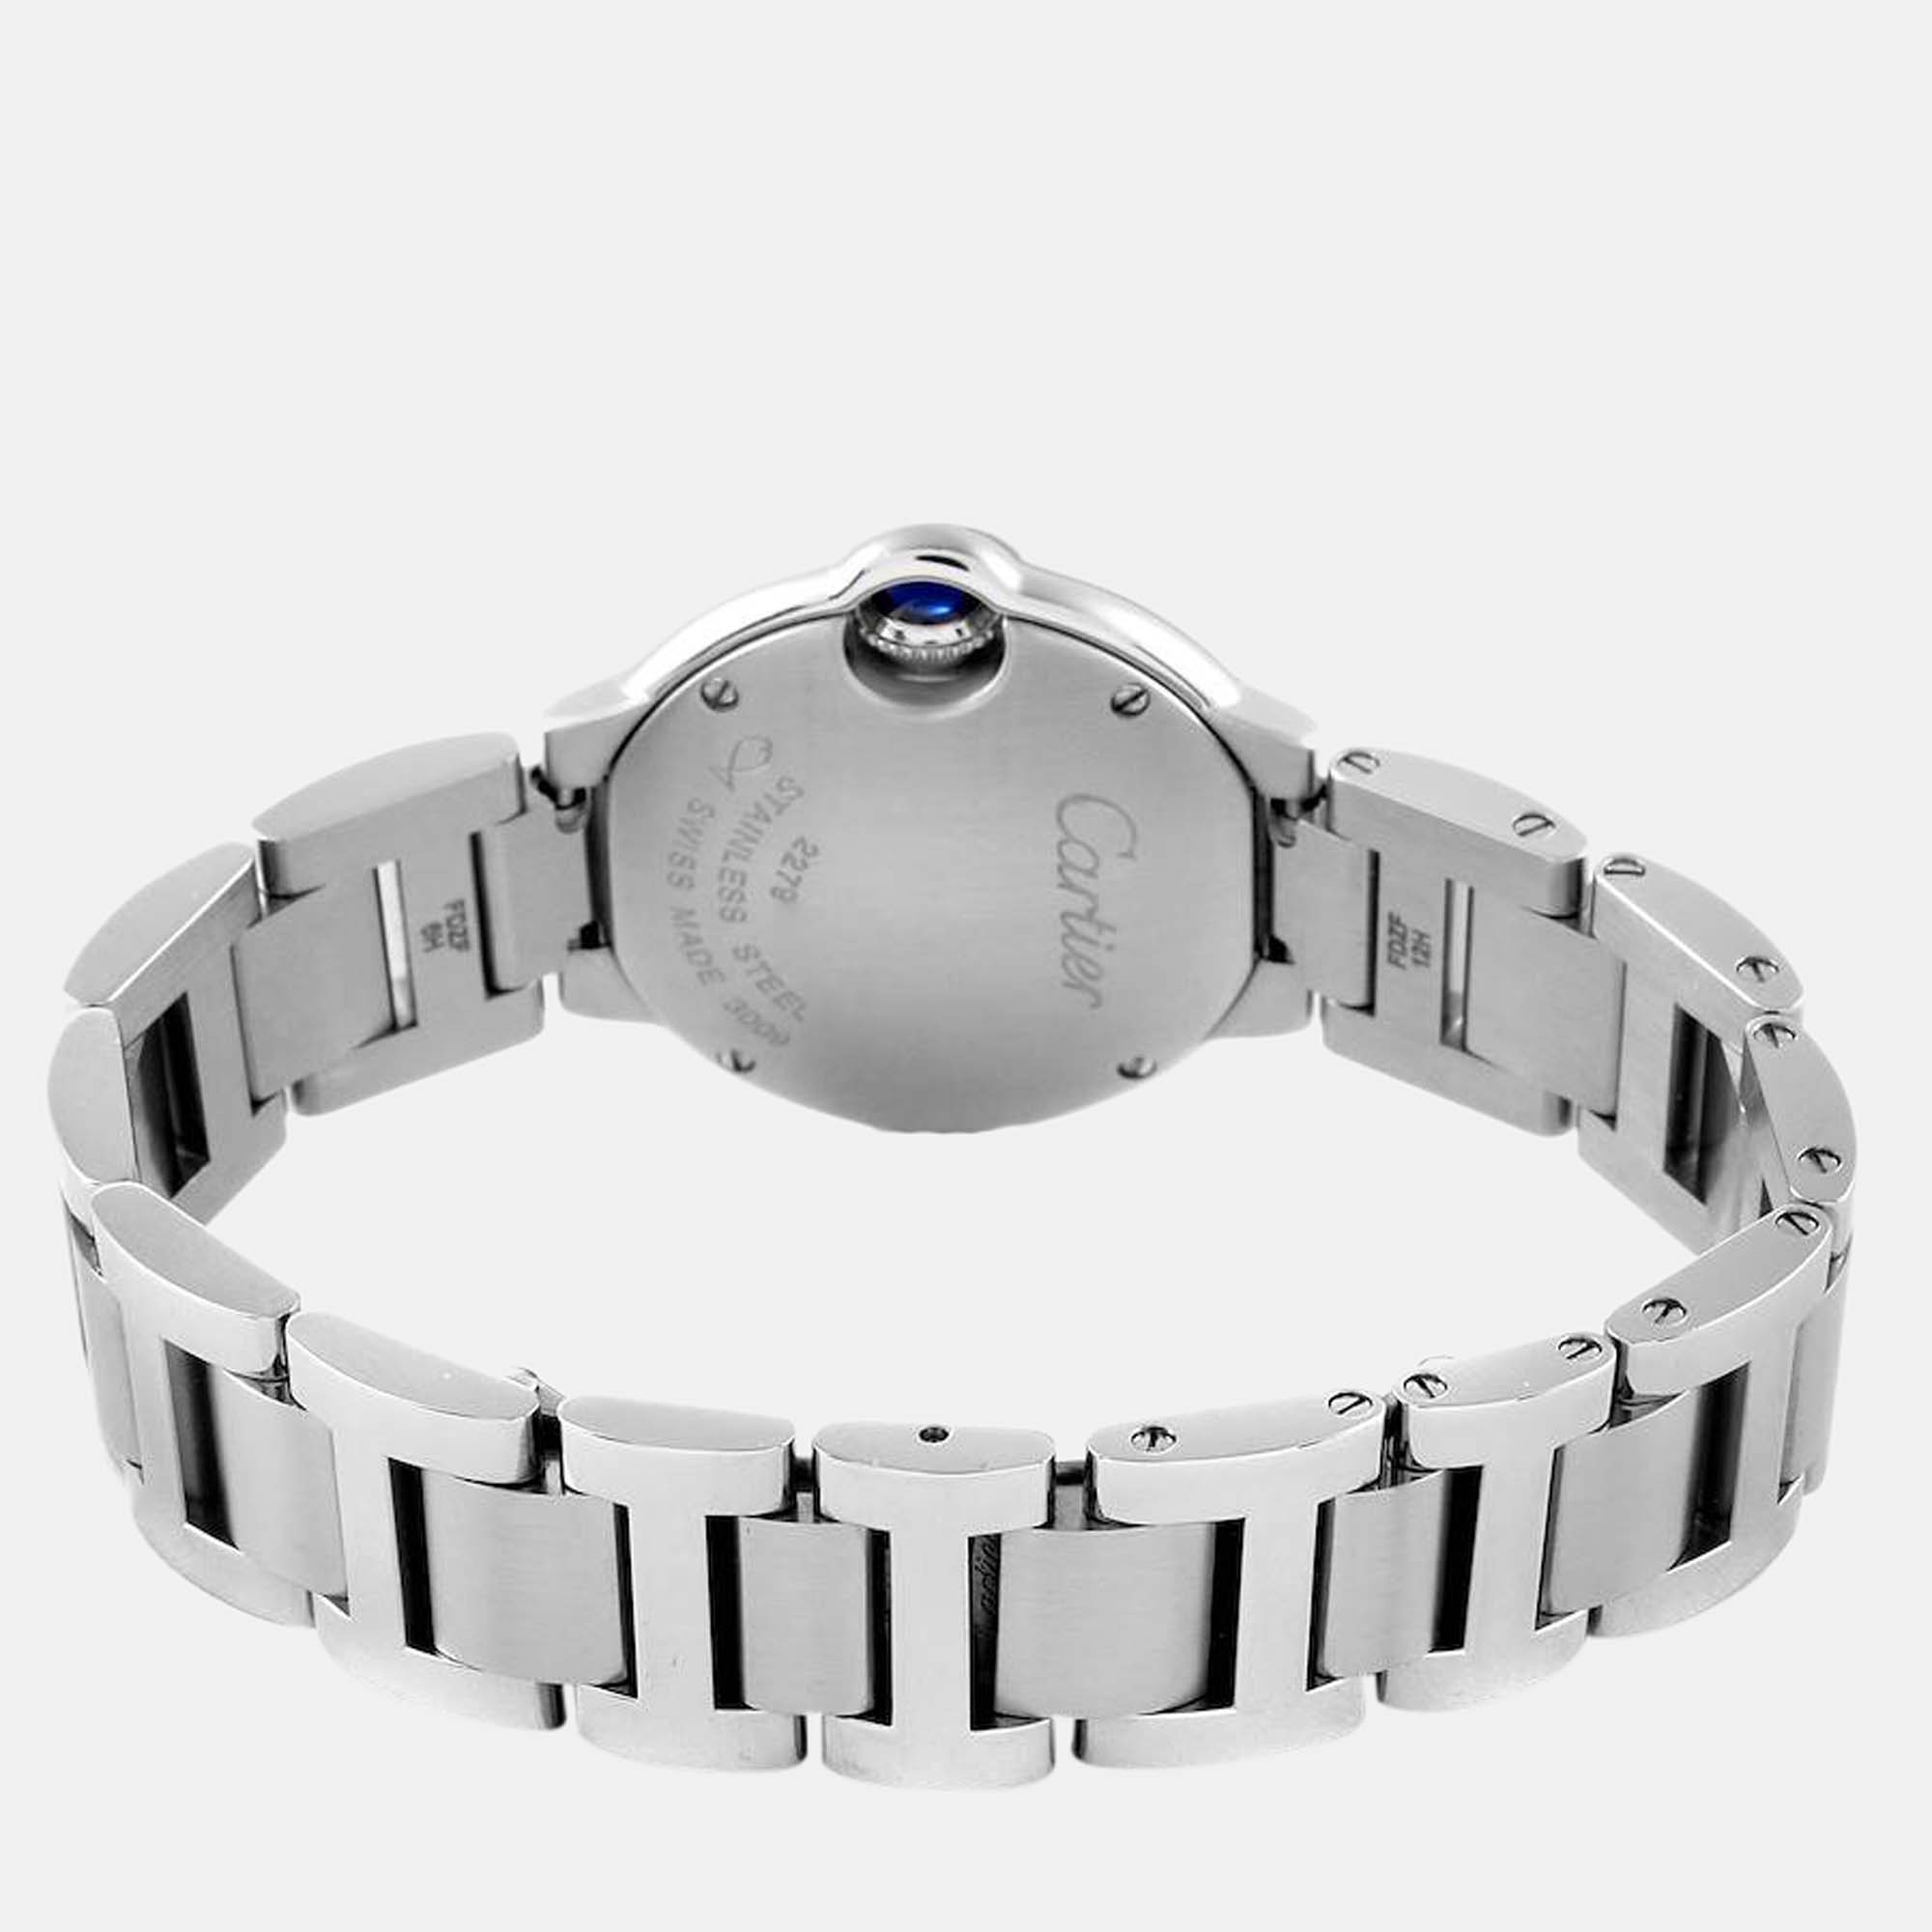 Cartier Silver Stainless Steel Ballon Bleu W69010Z4 Quartz Women's Wristwatch 29 Mm